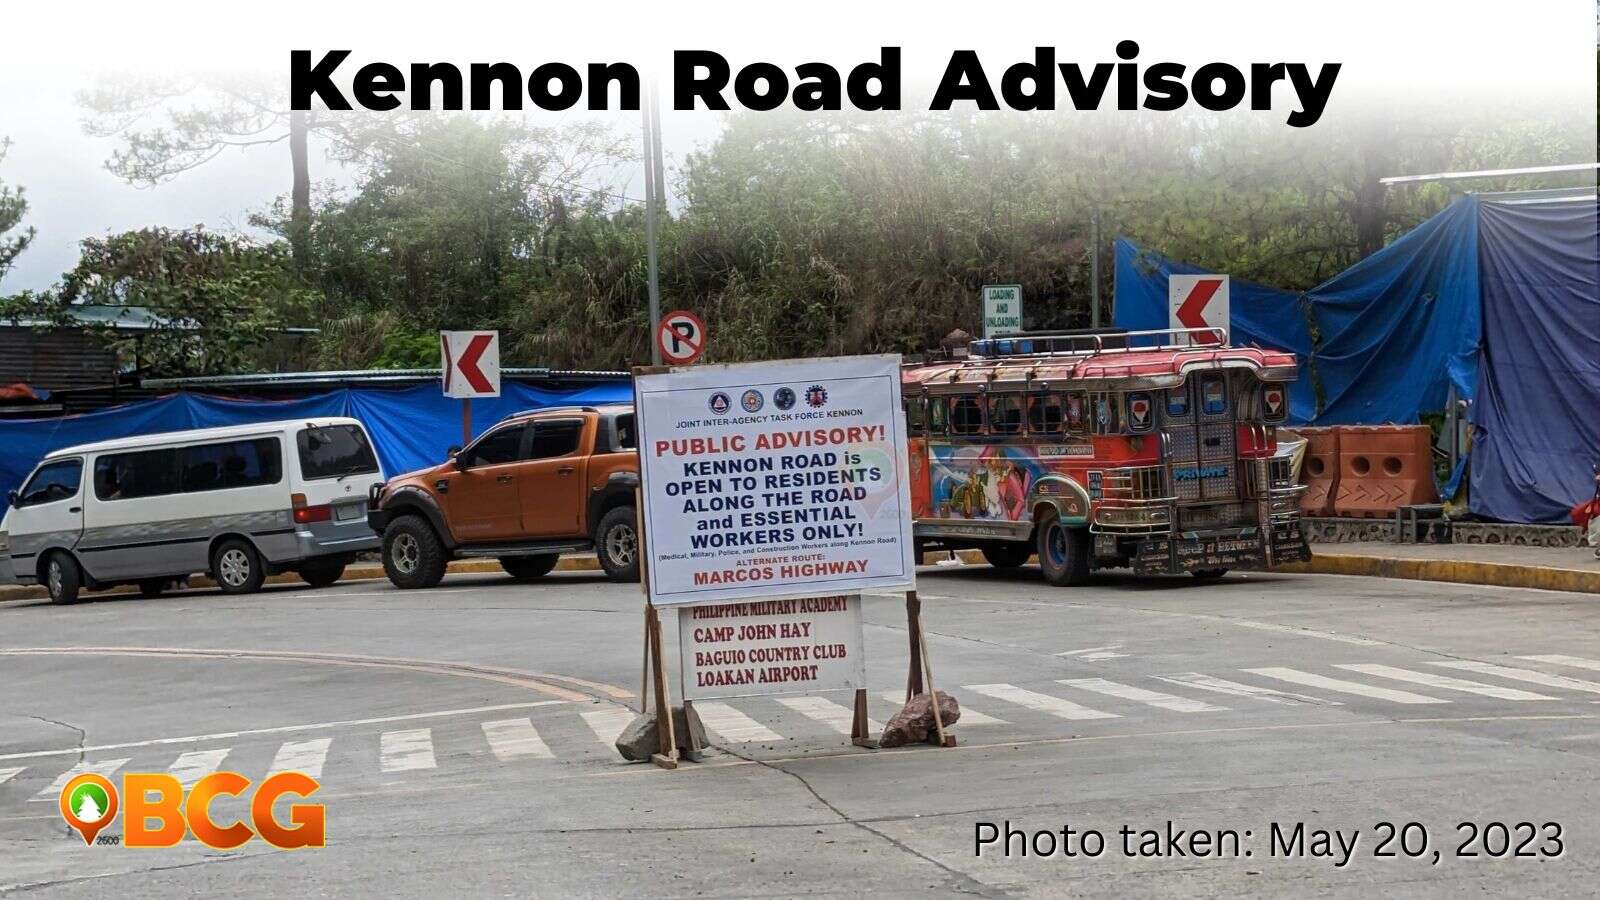 Is Kennon Road open to motorists?